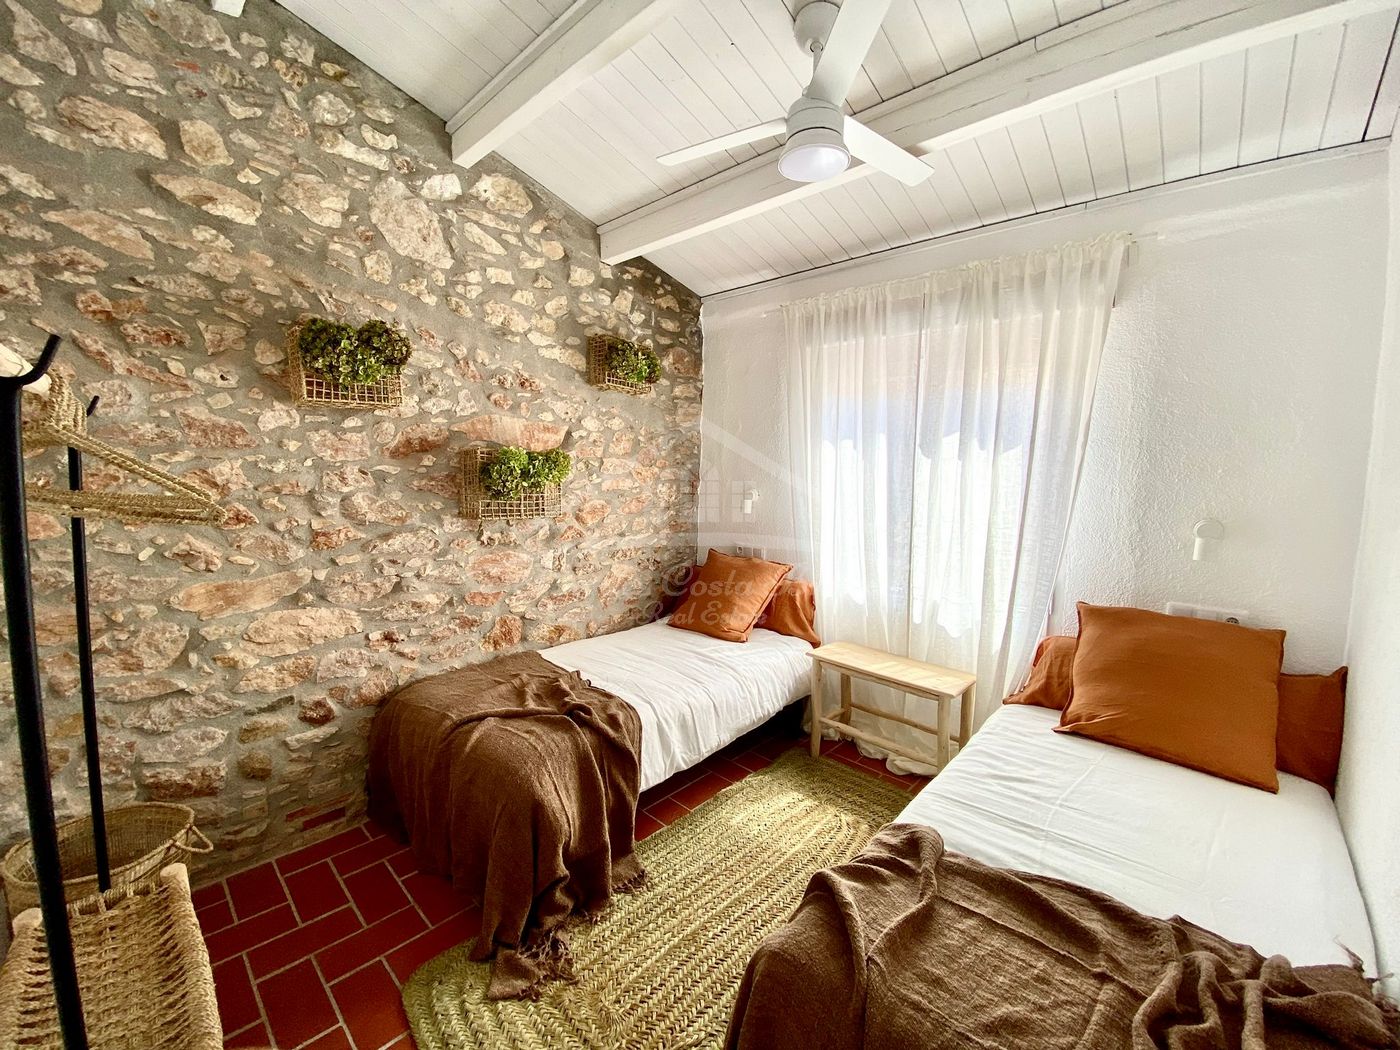 Gran oportunidad!! Venta de casa de piedra restaurada totalmente, equipada y amueblada con mucho encanto,  situada en el centro de Palafrugell.